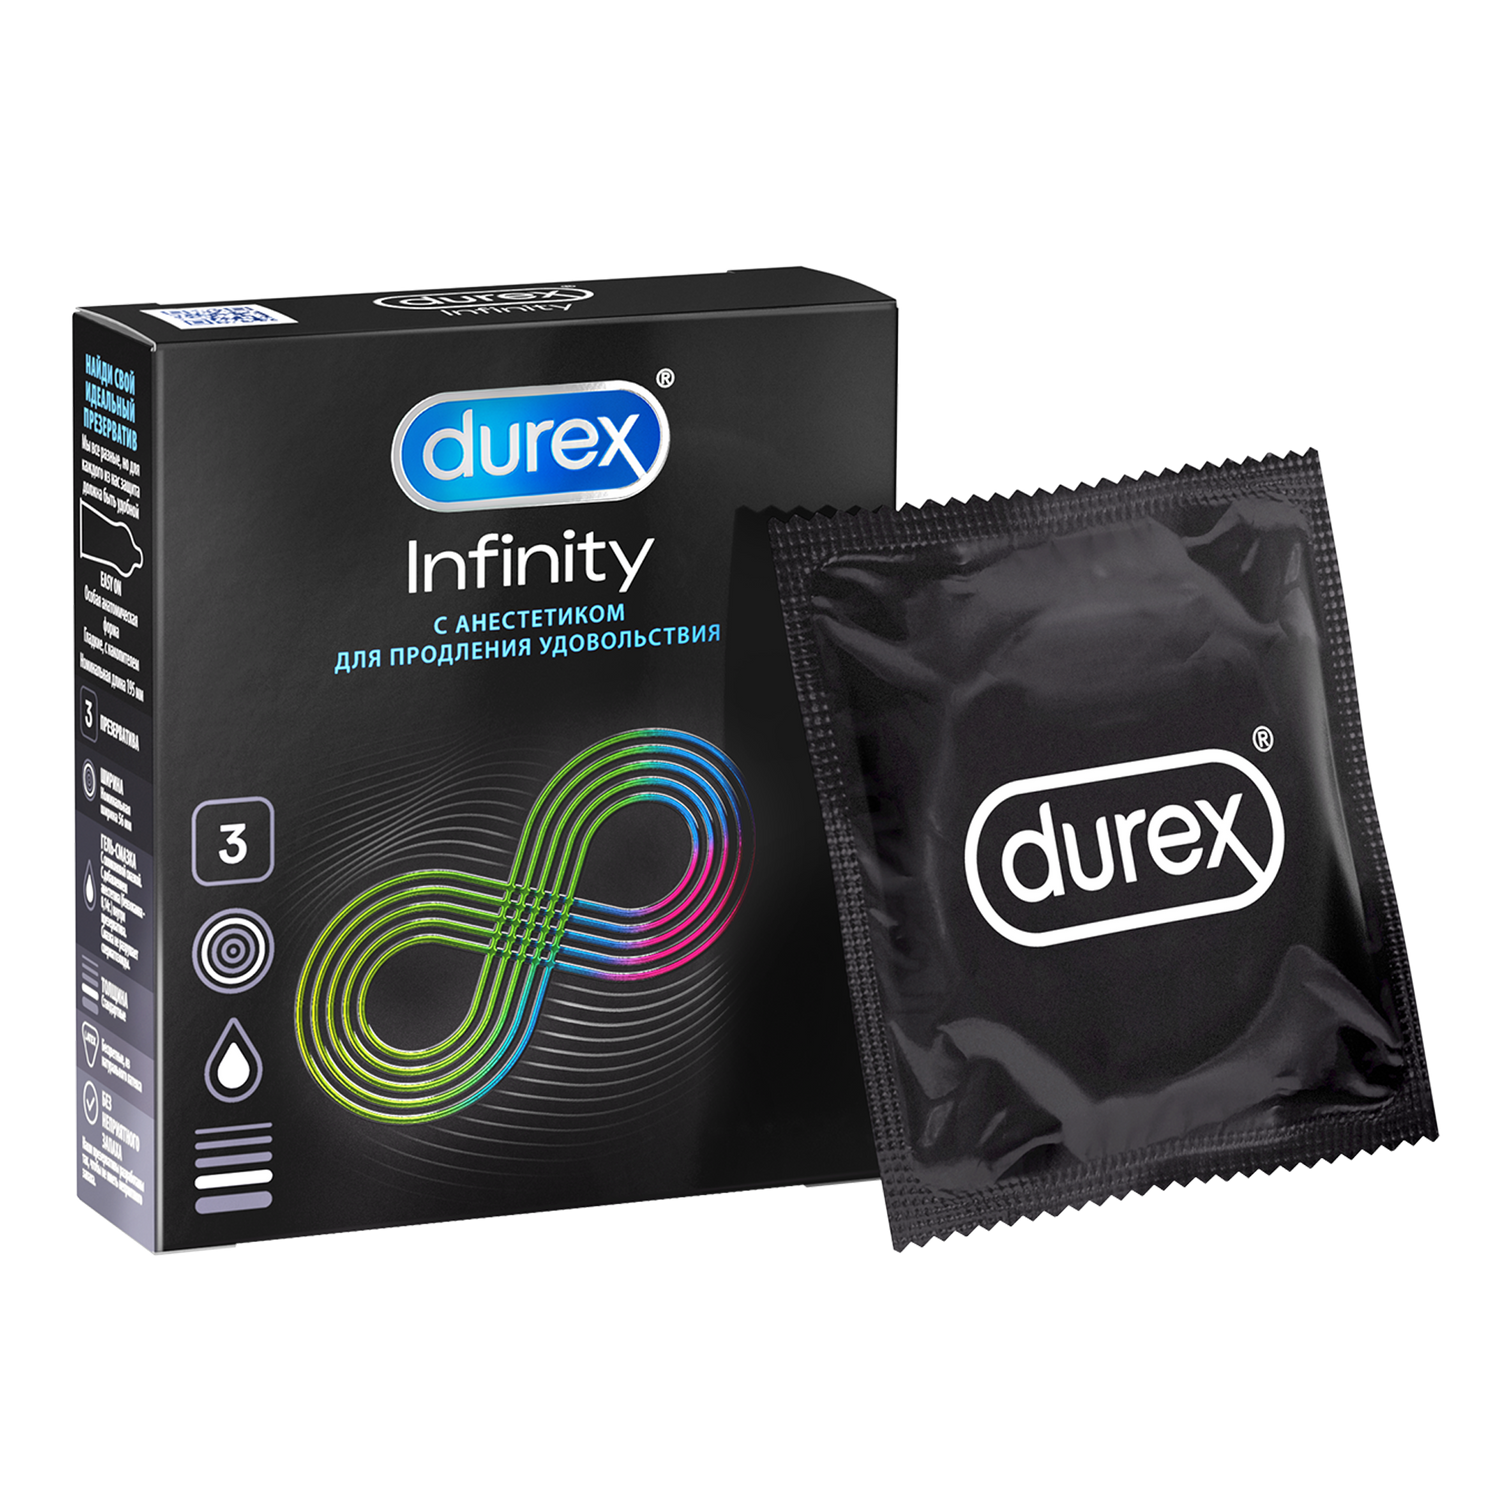 Презервативы Durex Infinity с анестетиком гладкие, 3 шт. комплект презервативы durex invisible xxl ультратонкие 3 шт х 2 уп